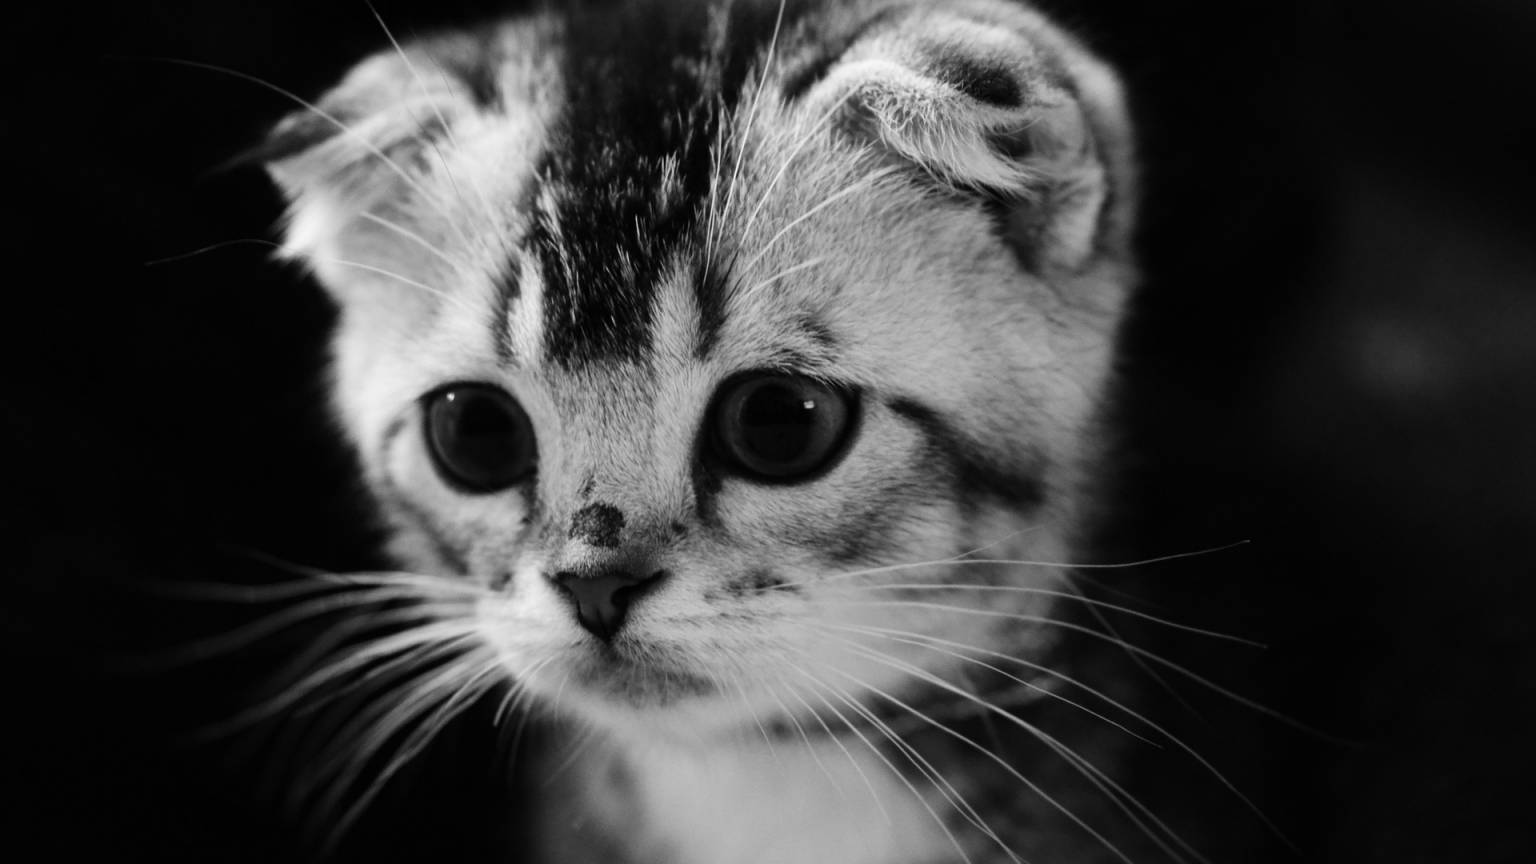 Cute Gray Kitten for 1536 x 864 HDTV resolution